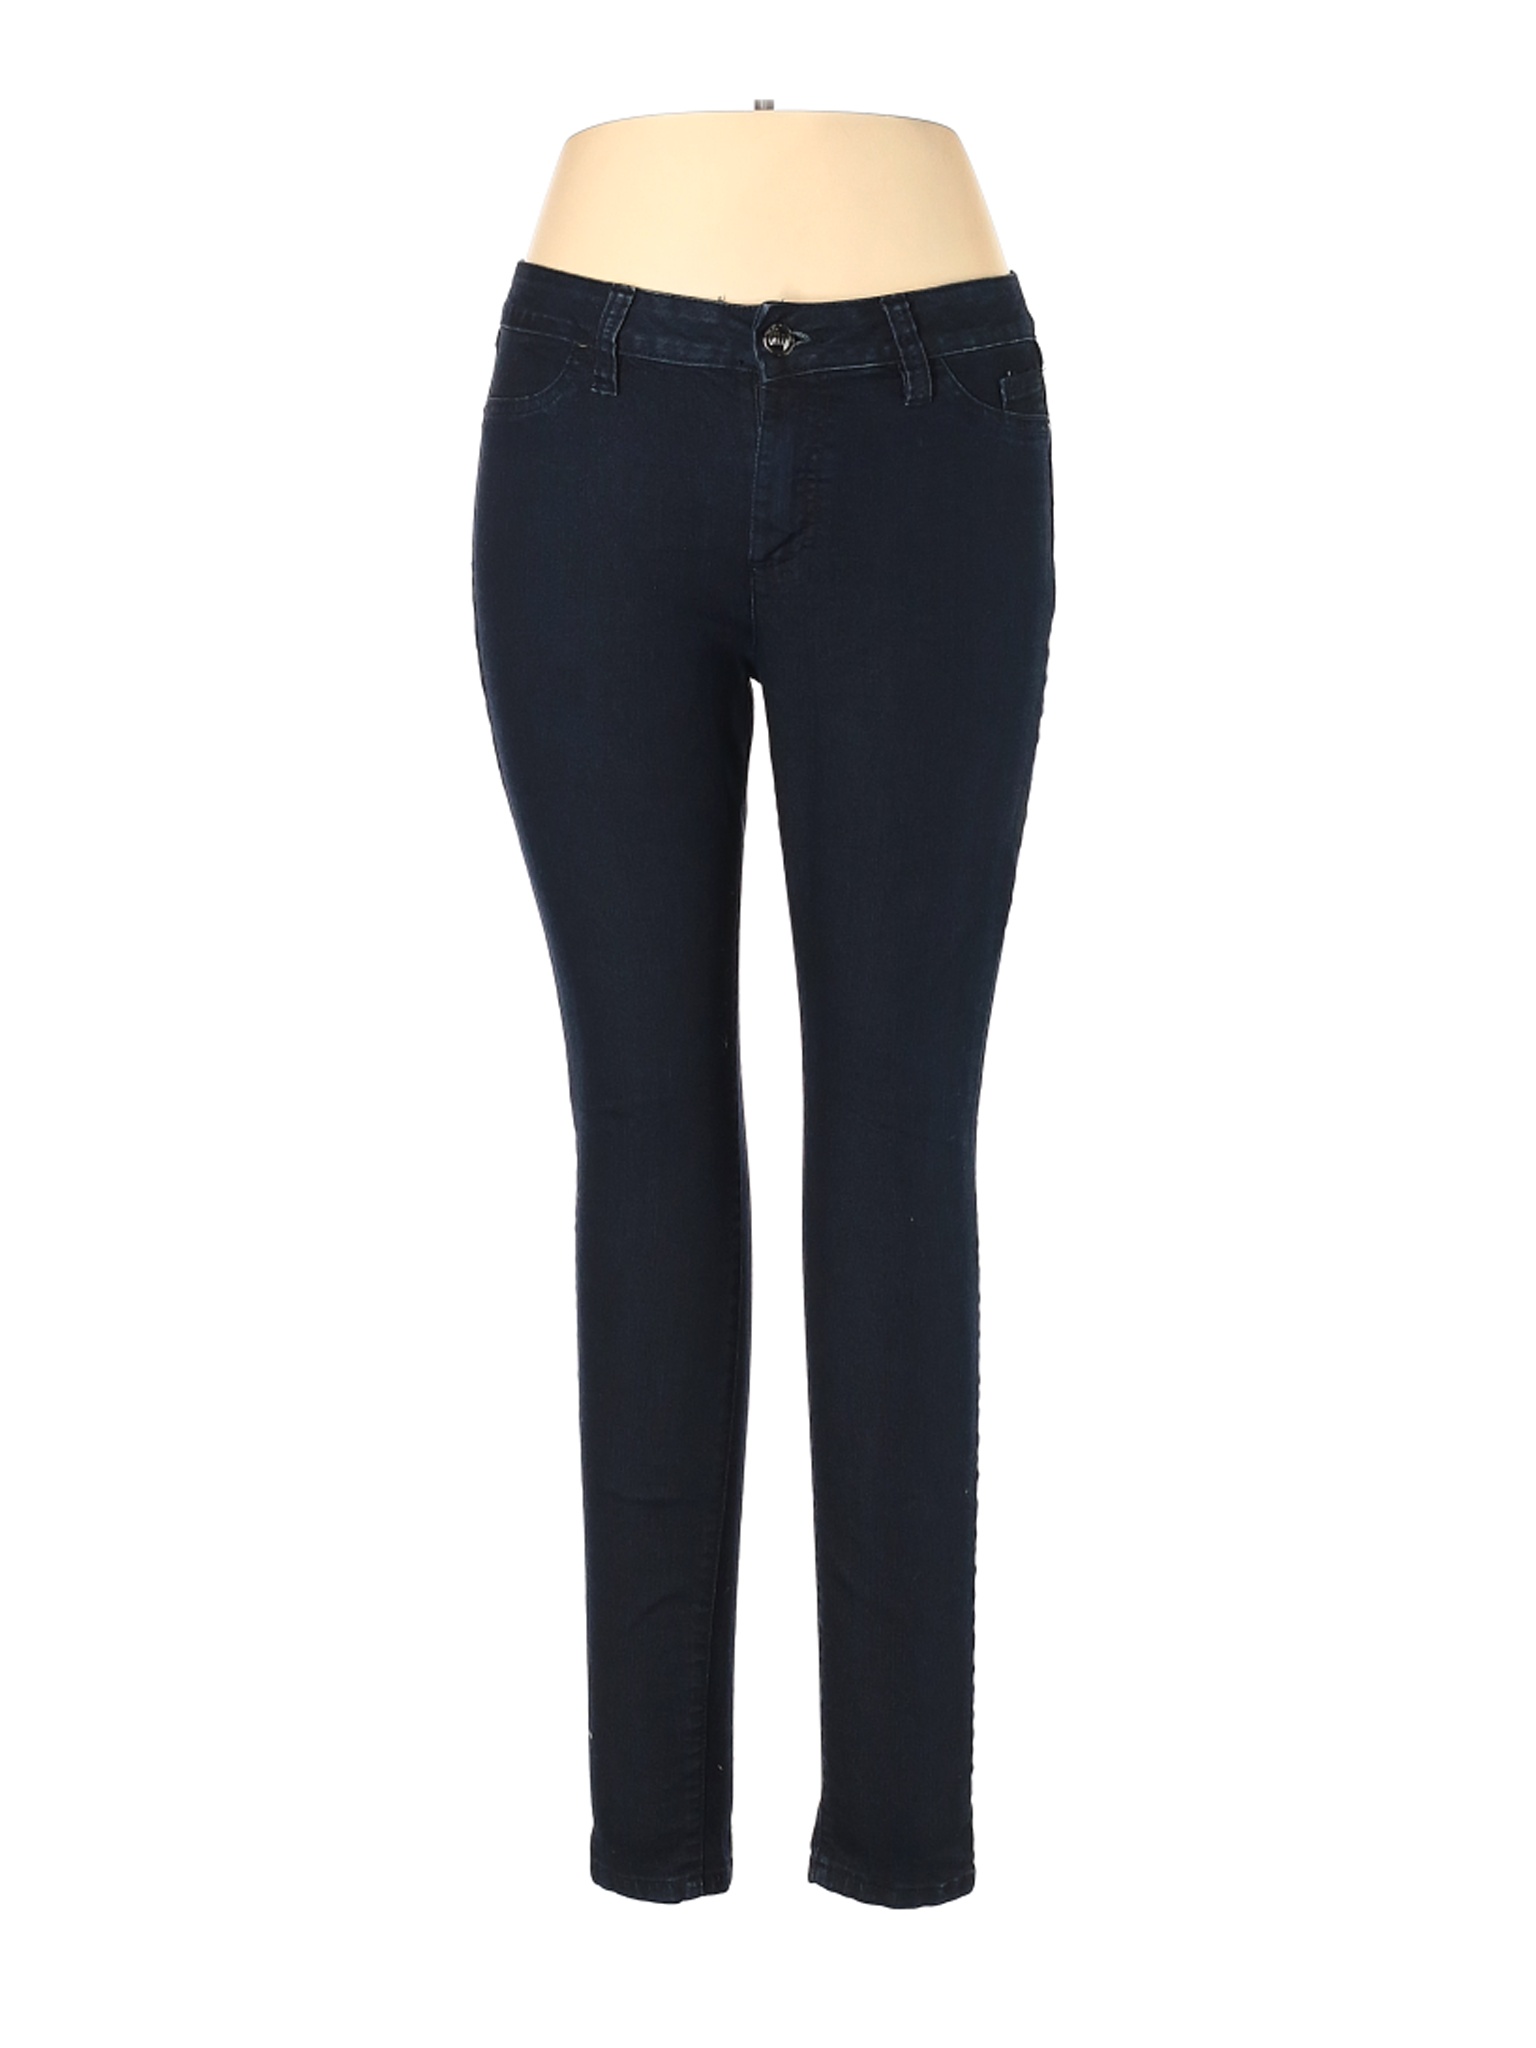 Elle Women Blue Jeans 14 | eBay